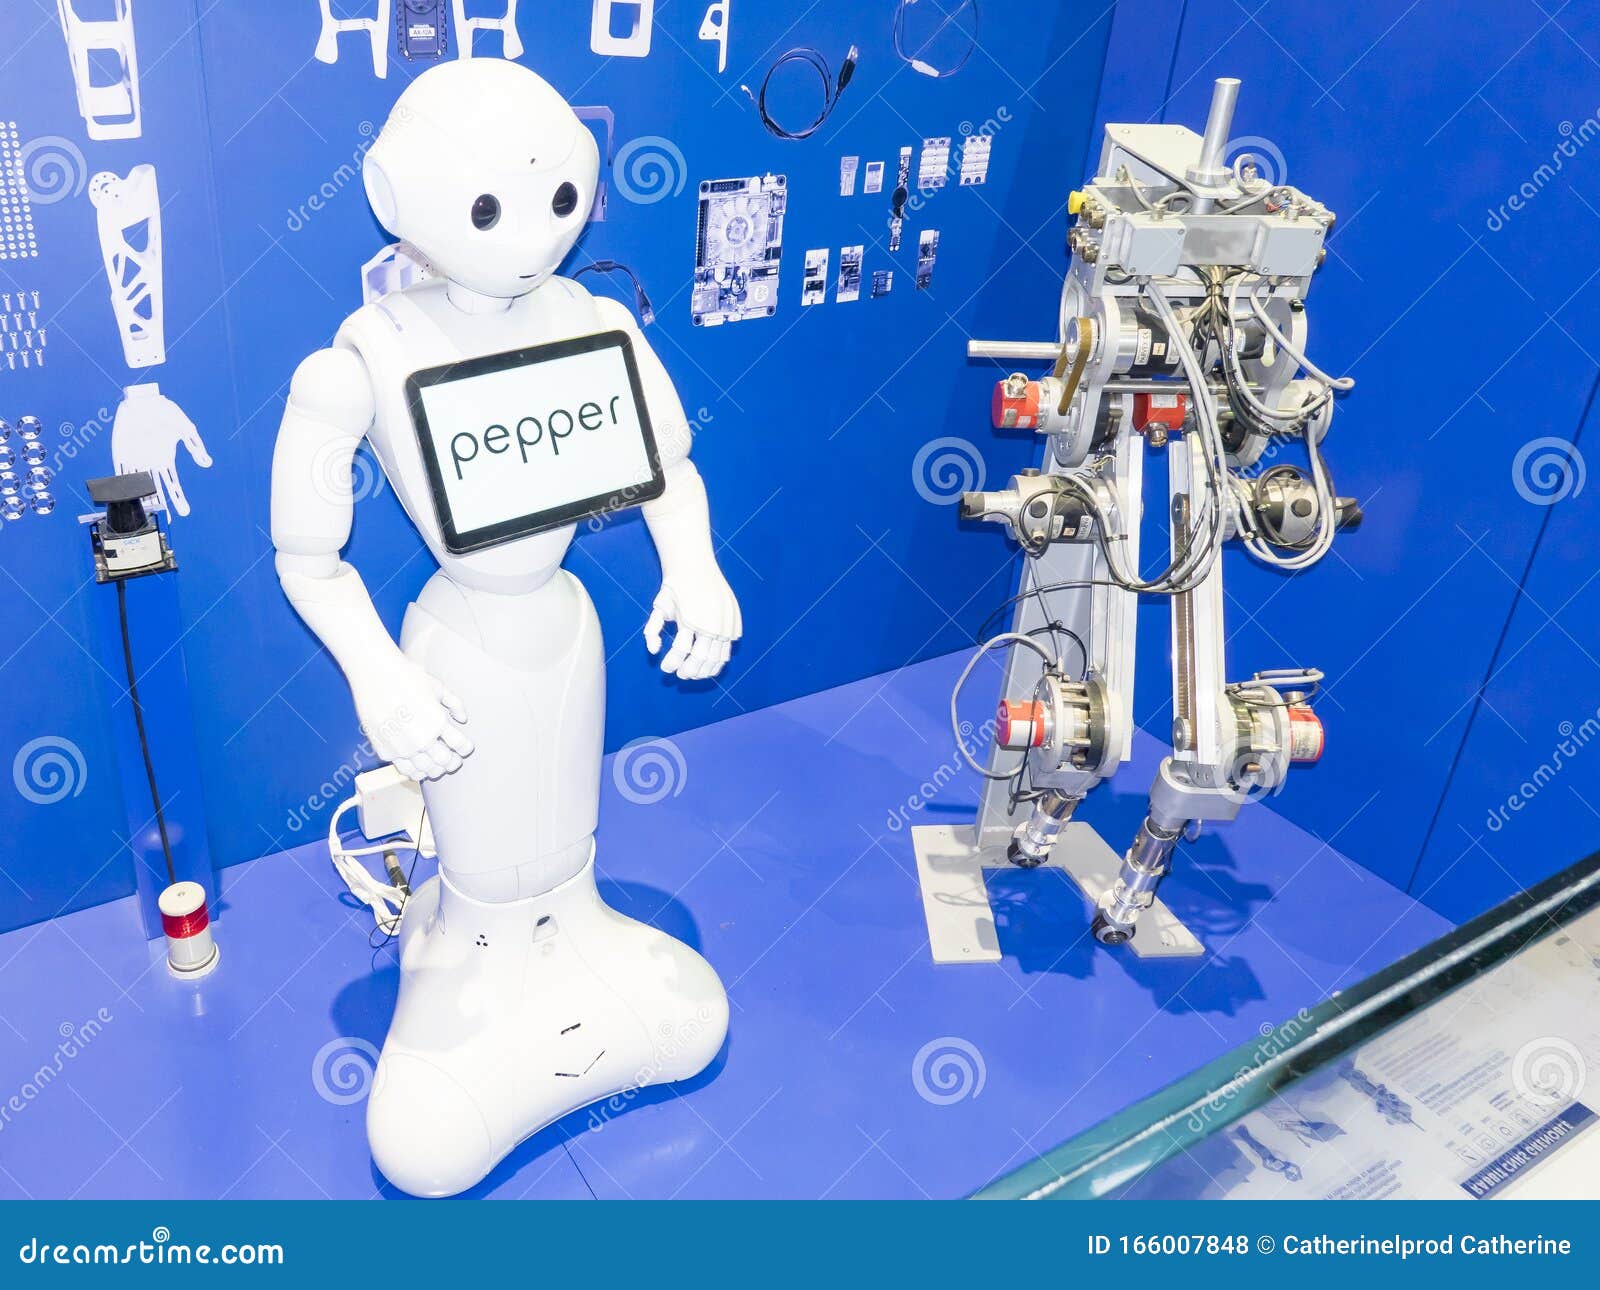 Читать про робота. Робот Пеппер. Робот читает эмоции. Итальянские роботы. Робот лого.